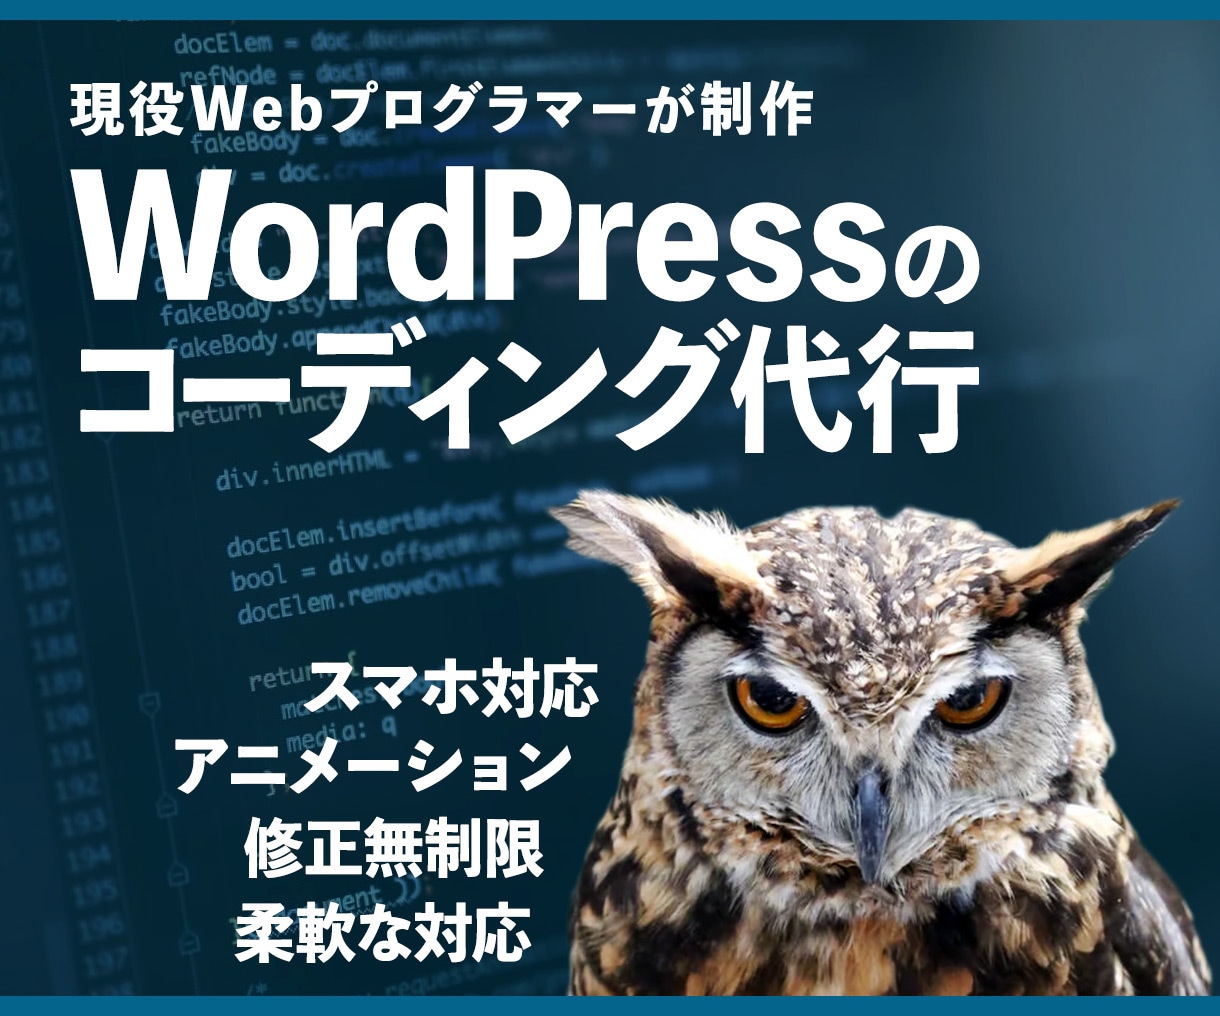 WordPressのコーディング承ります 現役Webプログラマーが対応します！ イメージ1